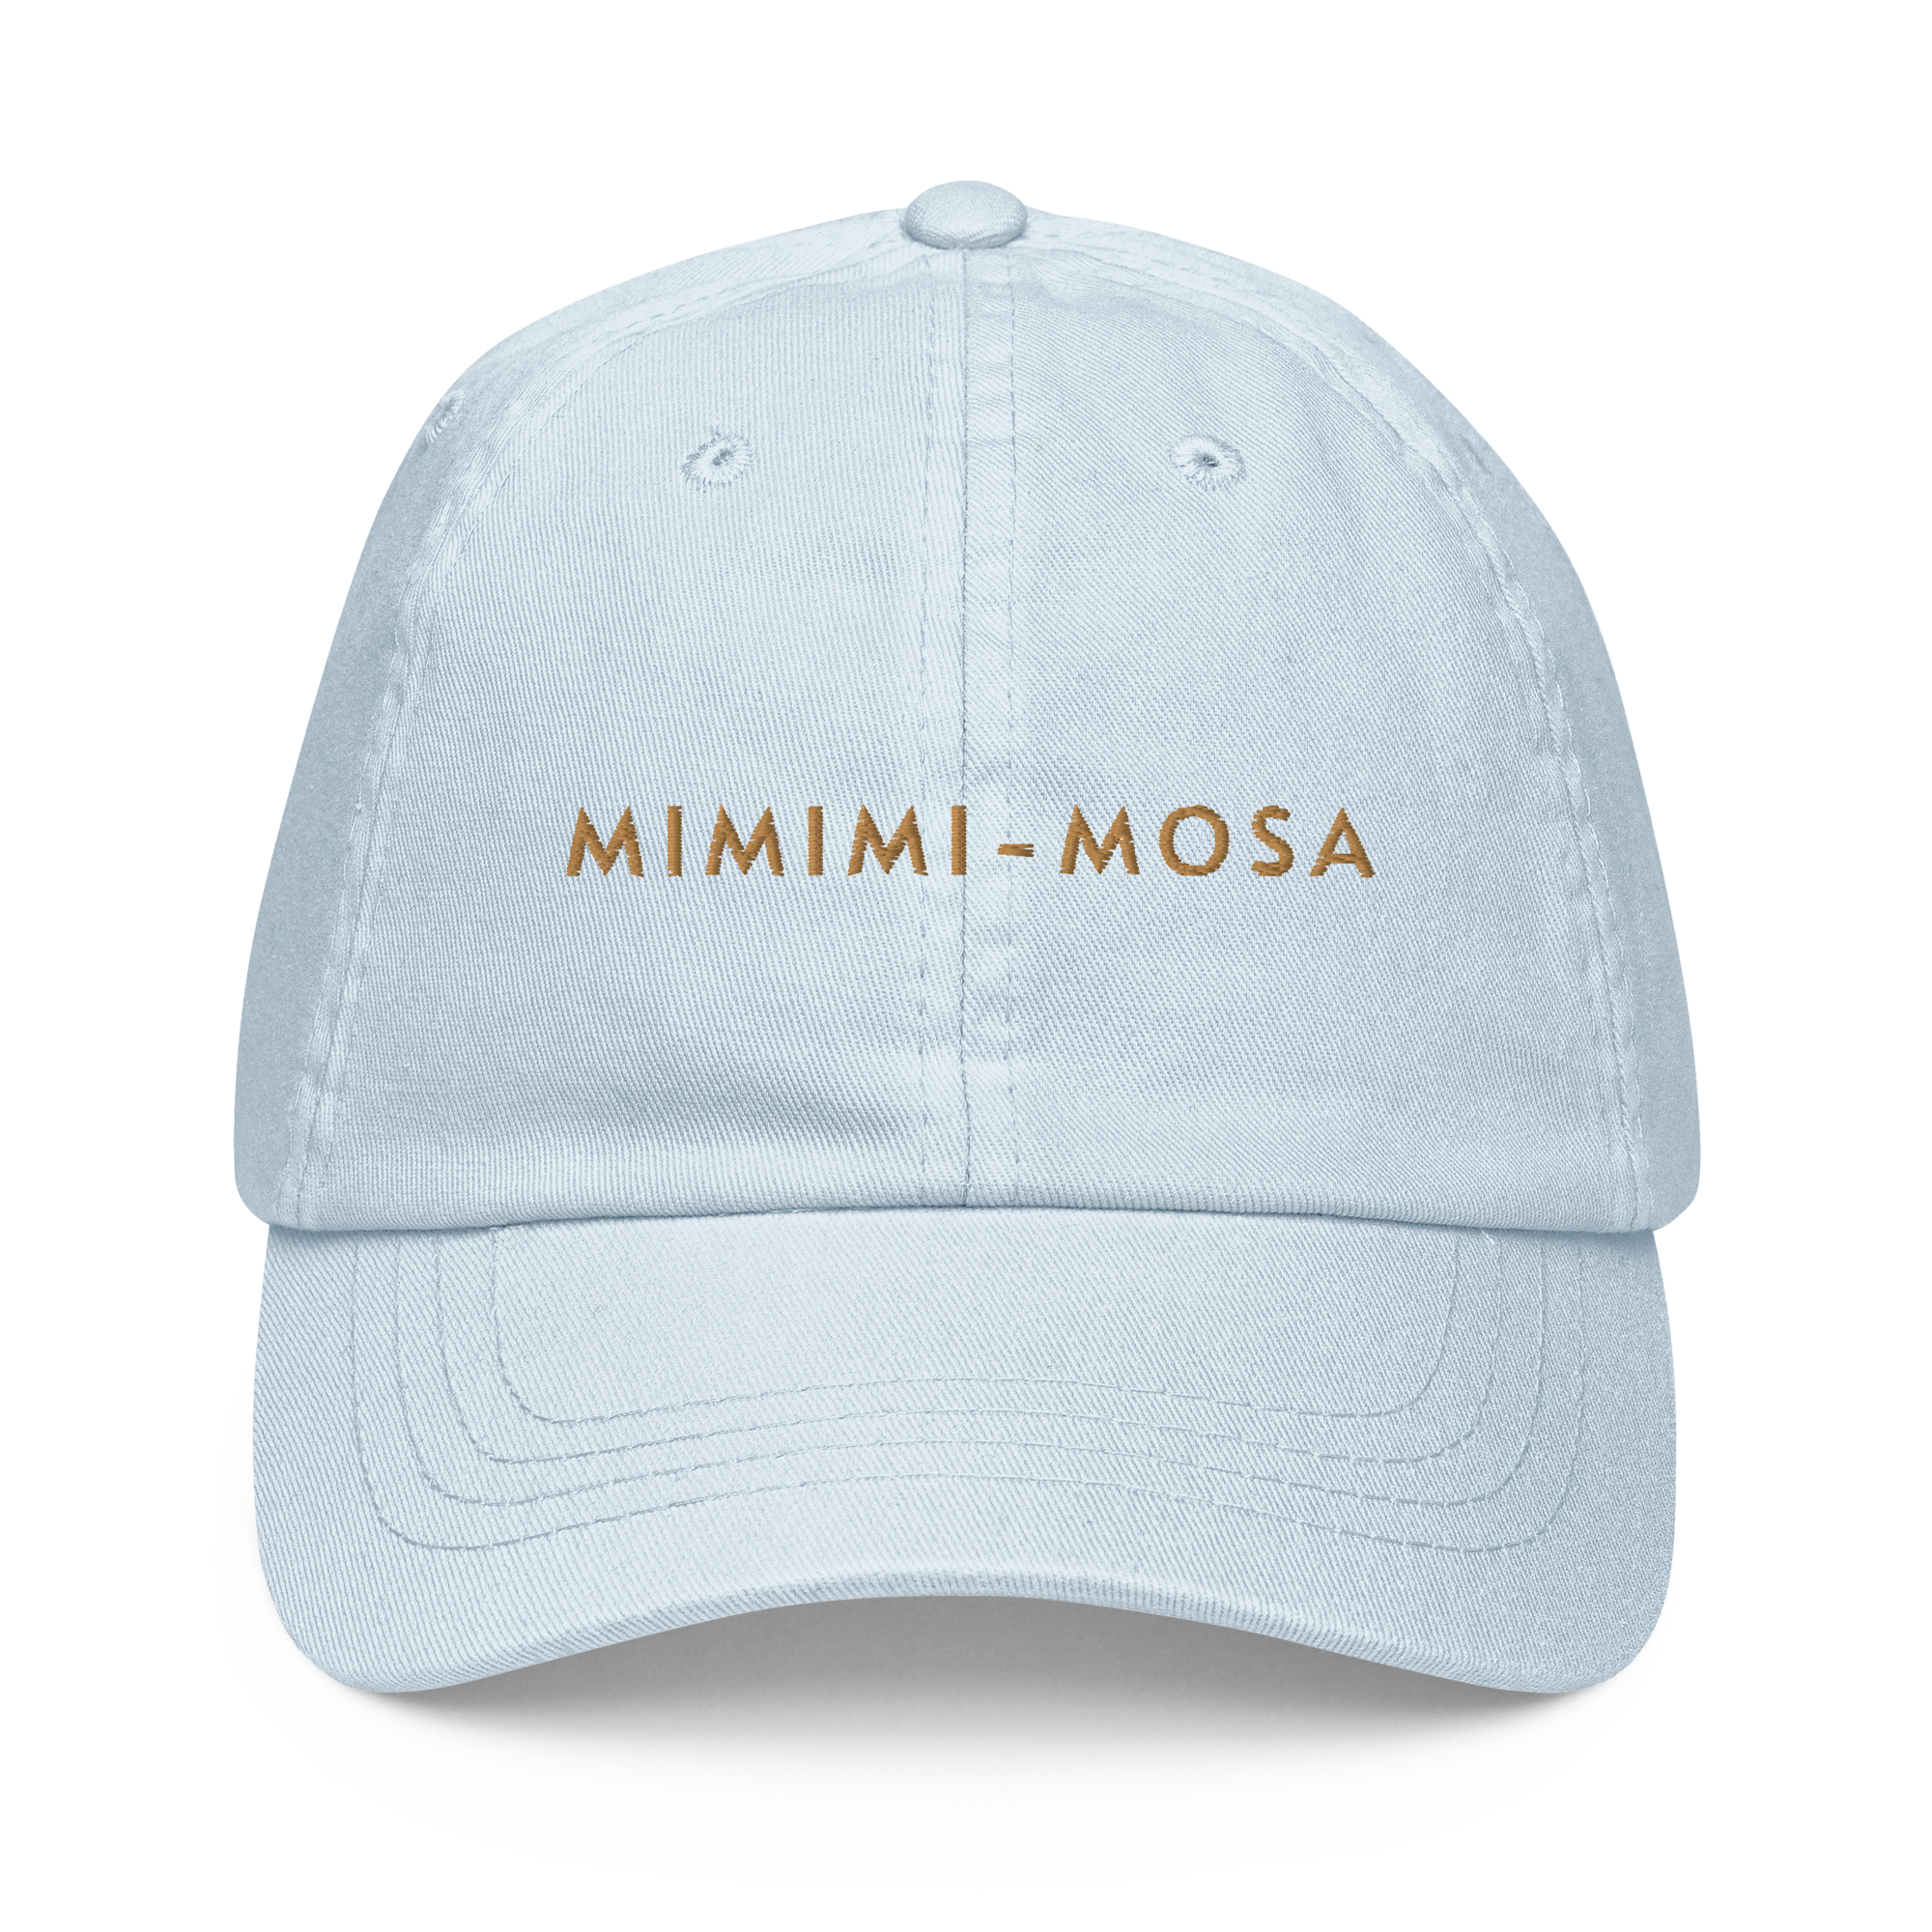 Mimimi-mosa Cap